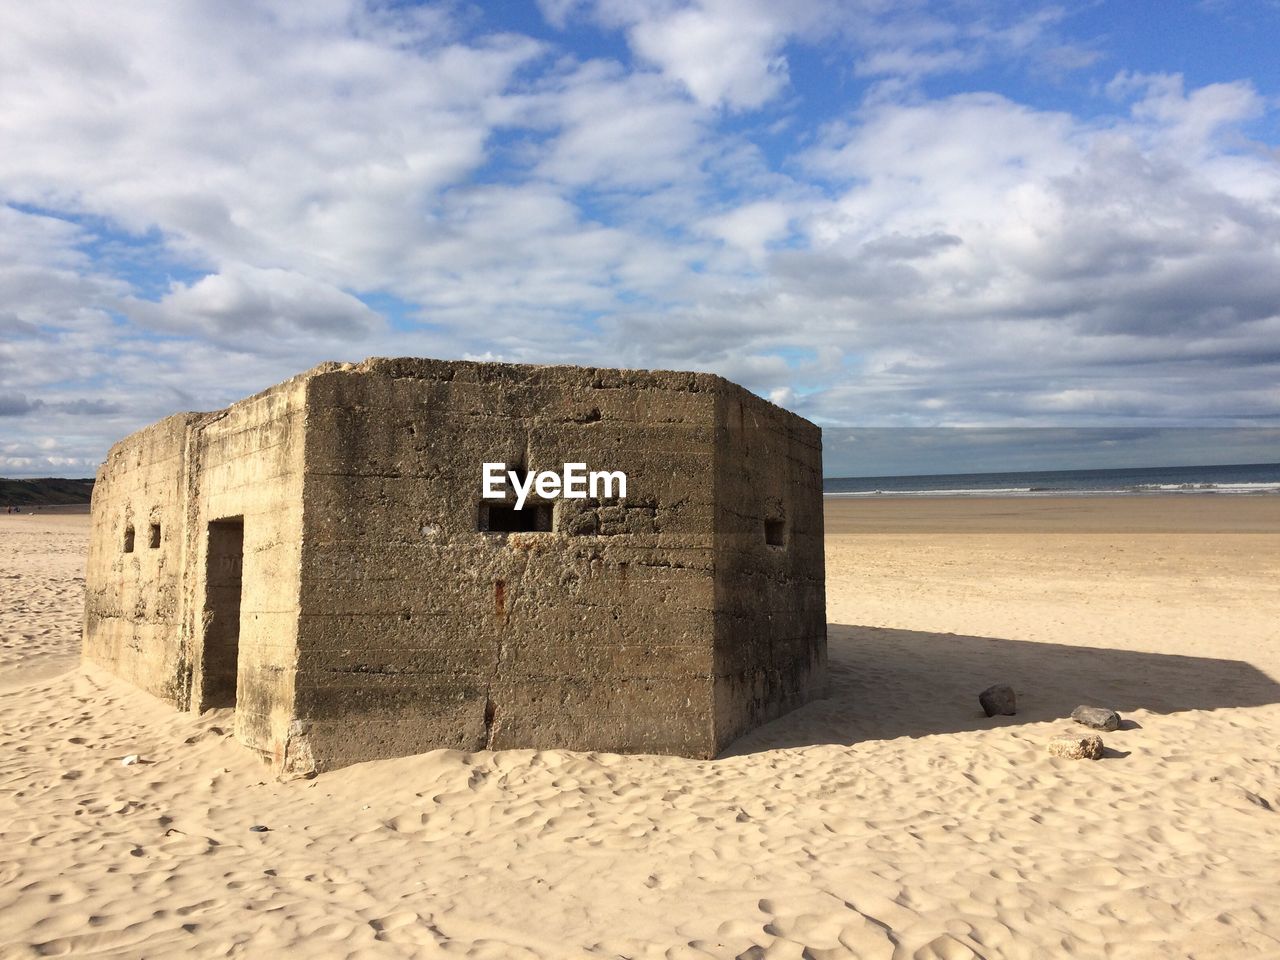 Built structure on sandy beach against cloudy sky